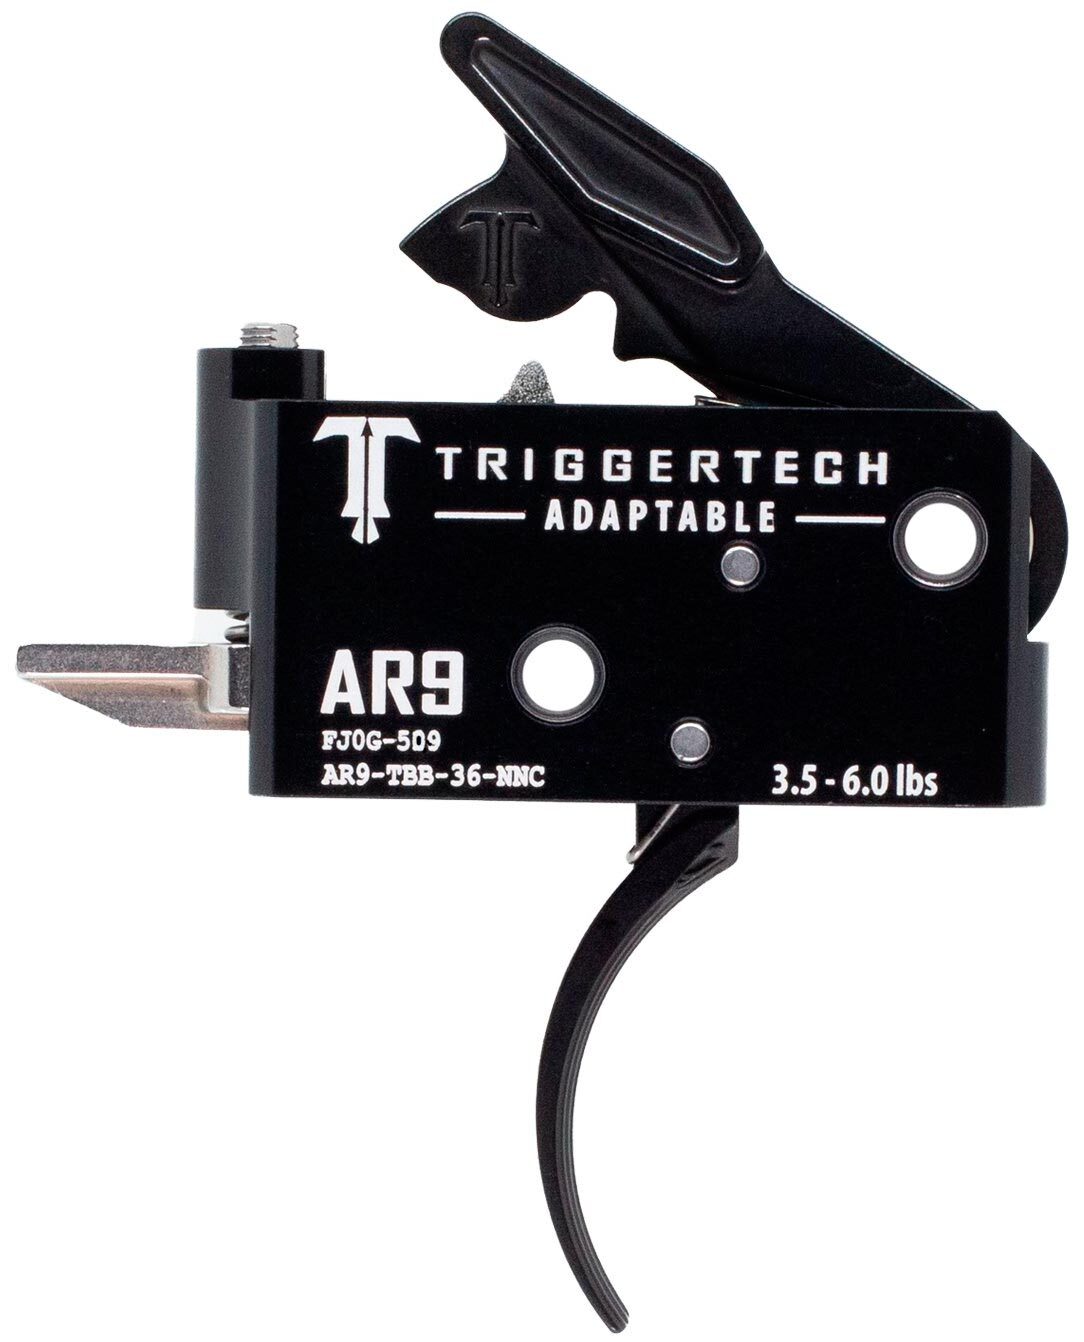 УСМ TriggerTech Adaptable Curved для AR9 (PCC) регулируемый двухступенчатый